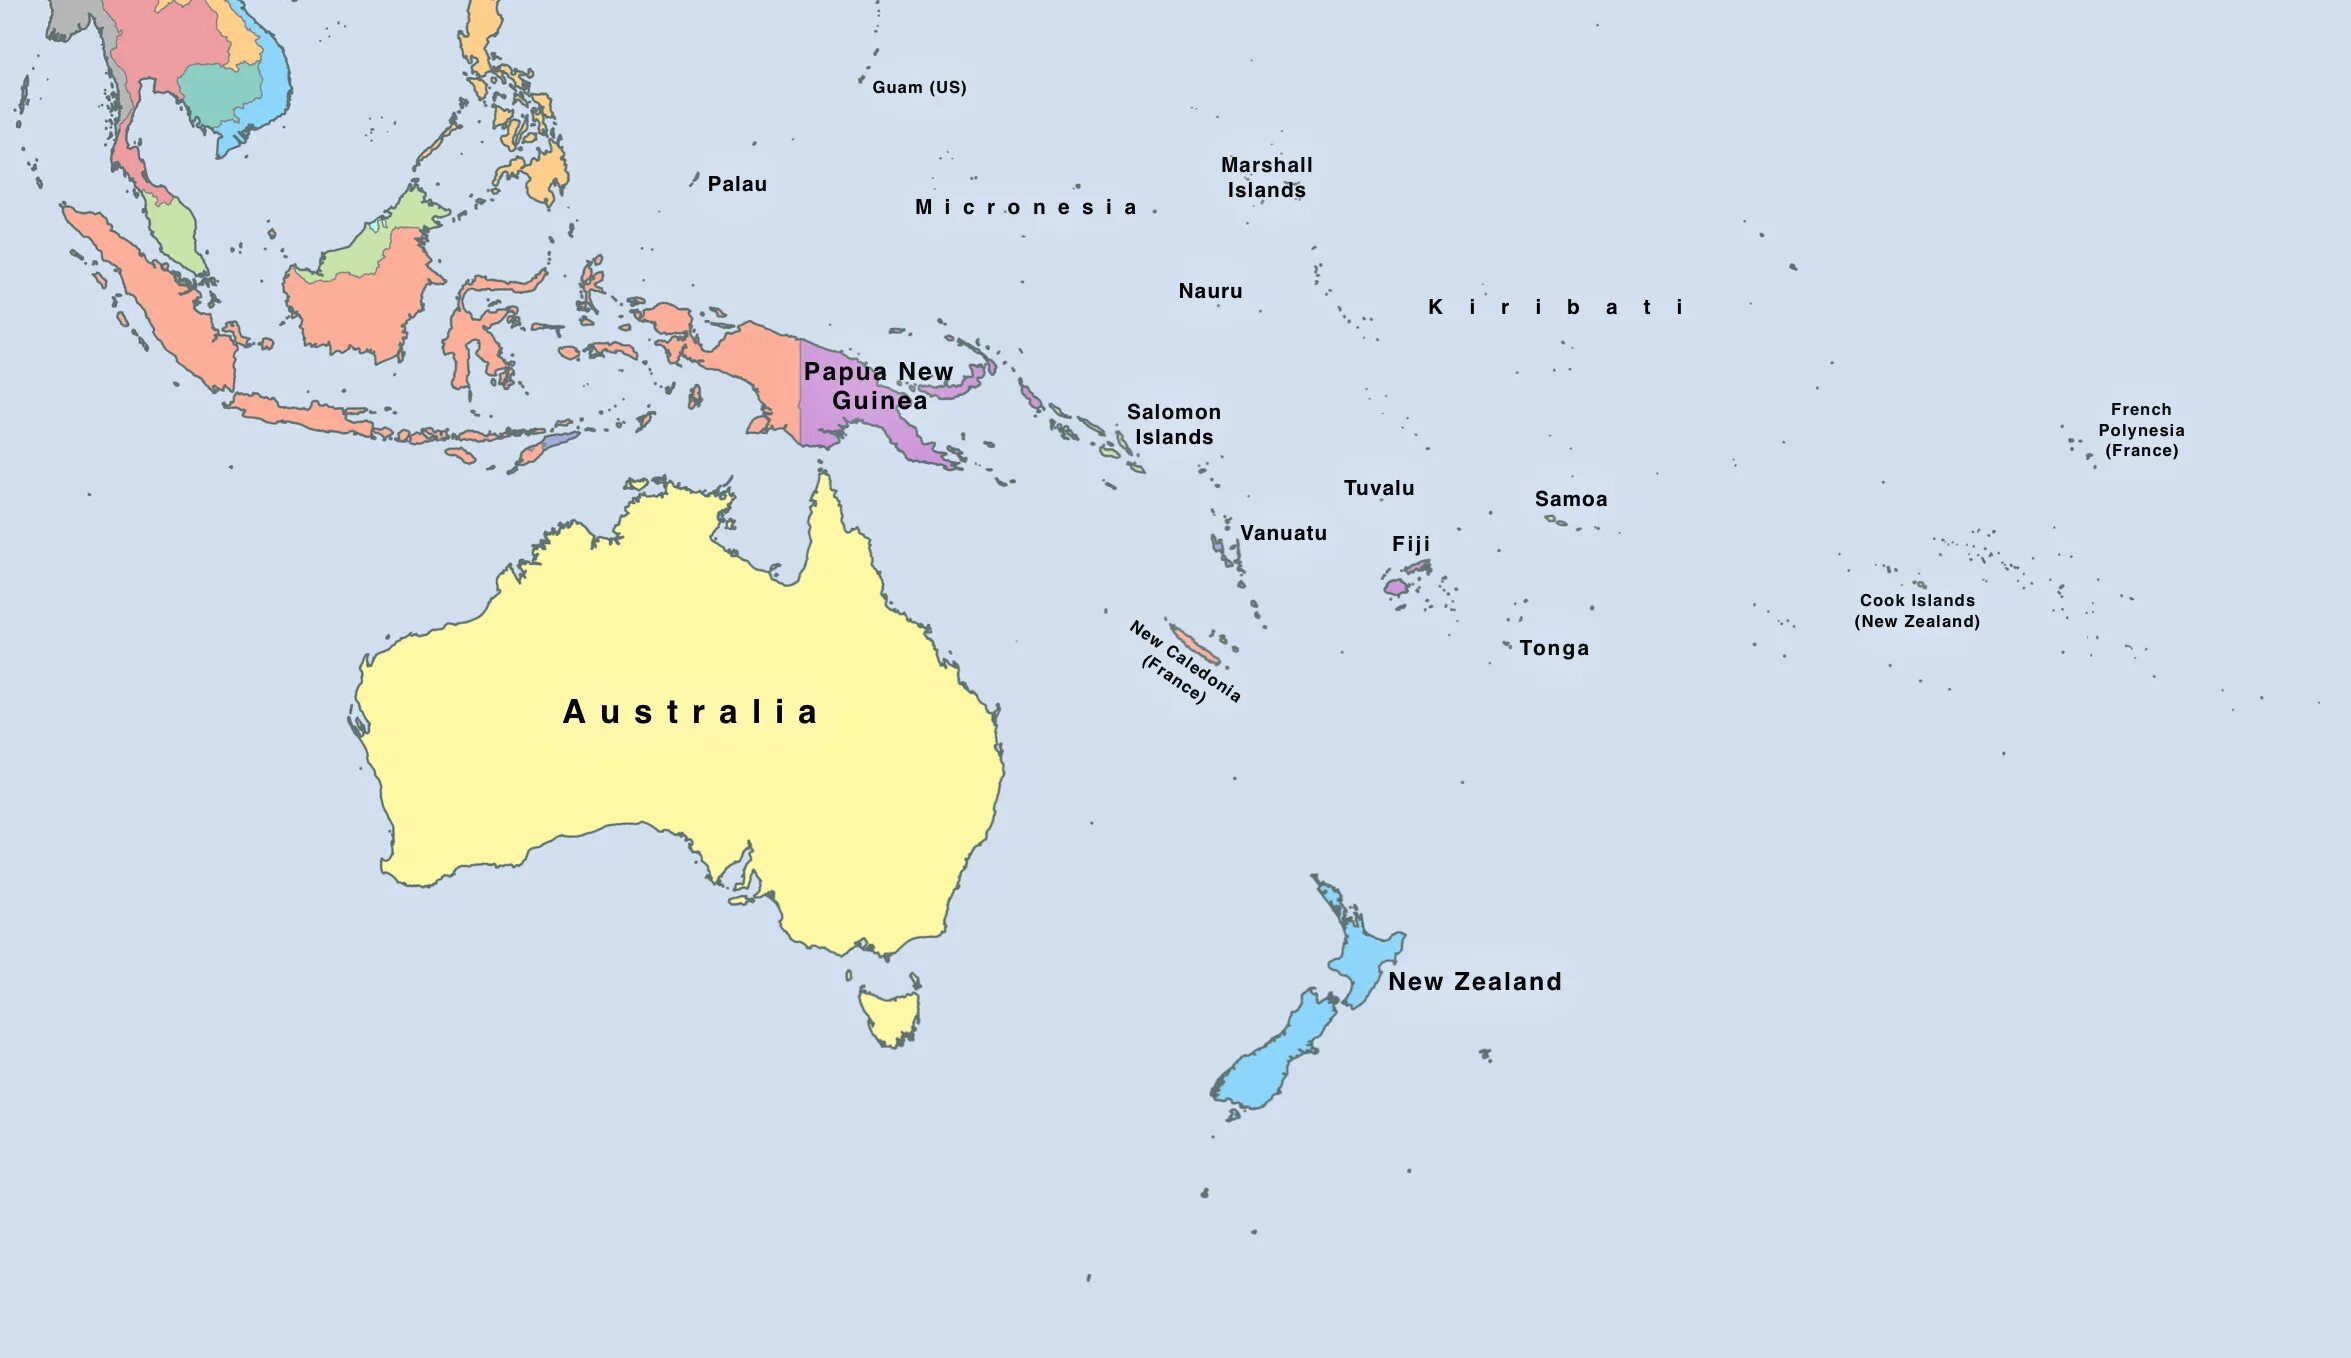 Острова австралии и океании. Политическая карта Океании. Полит карта Океании. Полит карта Австралии и Океании. Политическая карта Австралии и Океании со странами.